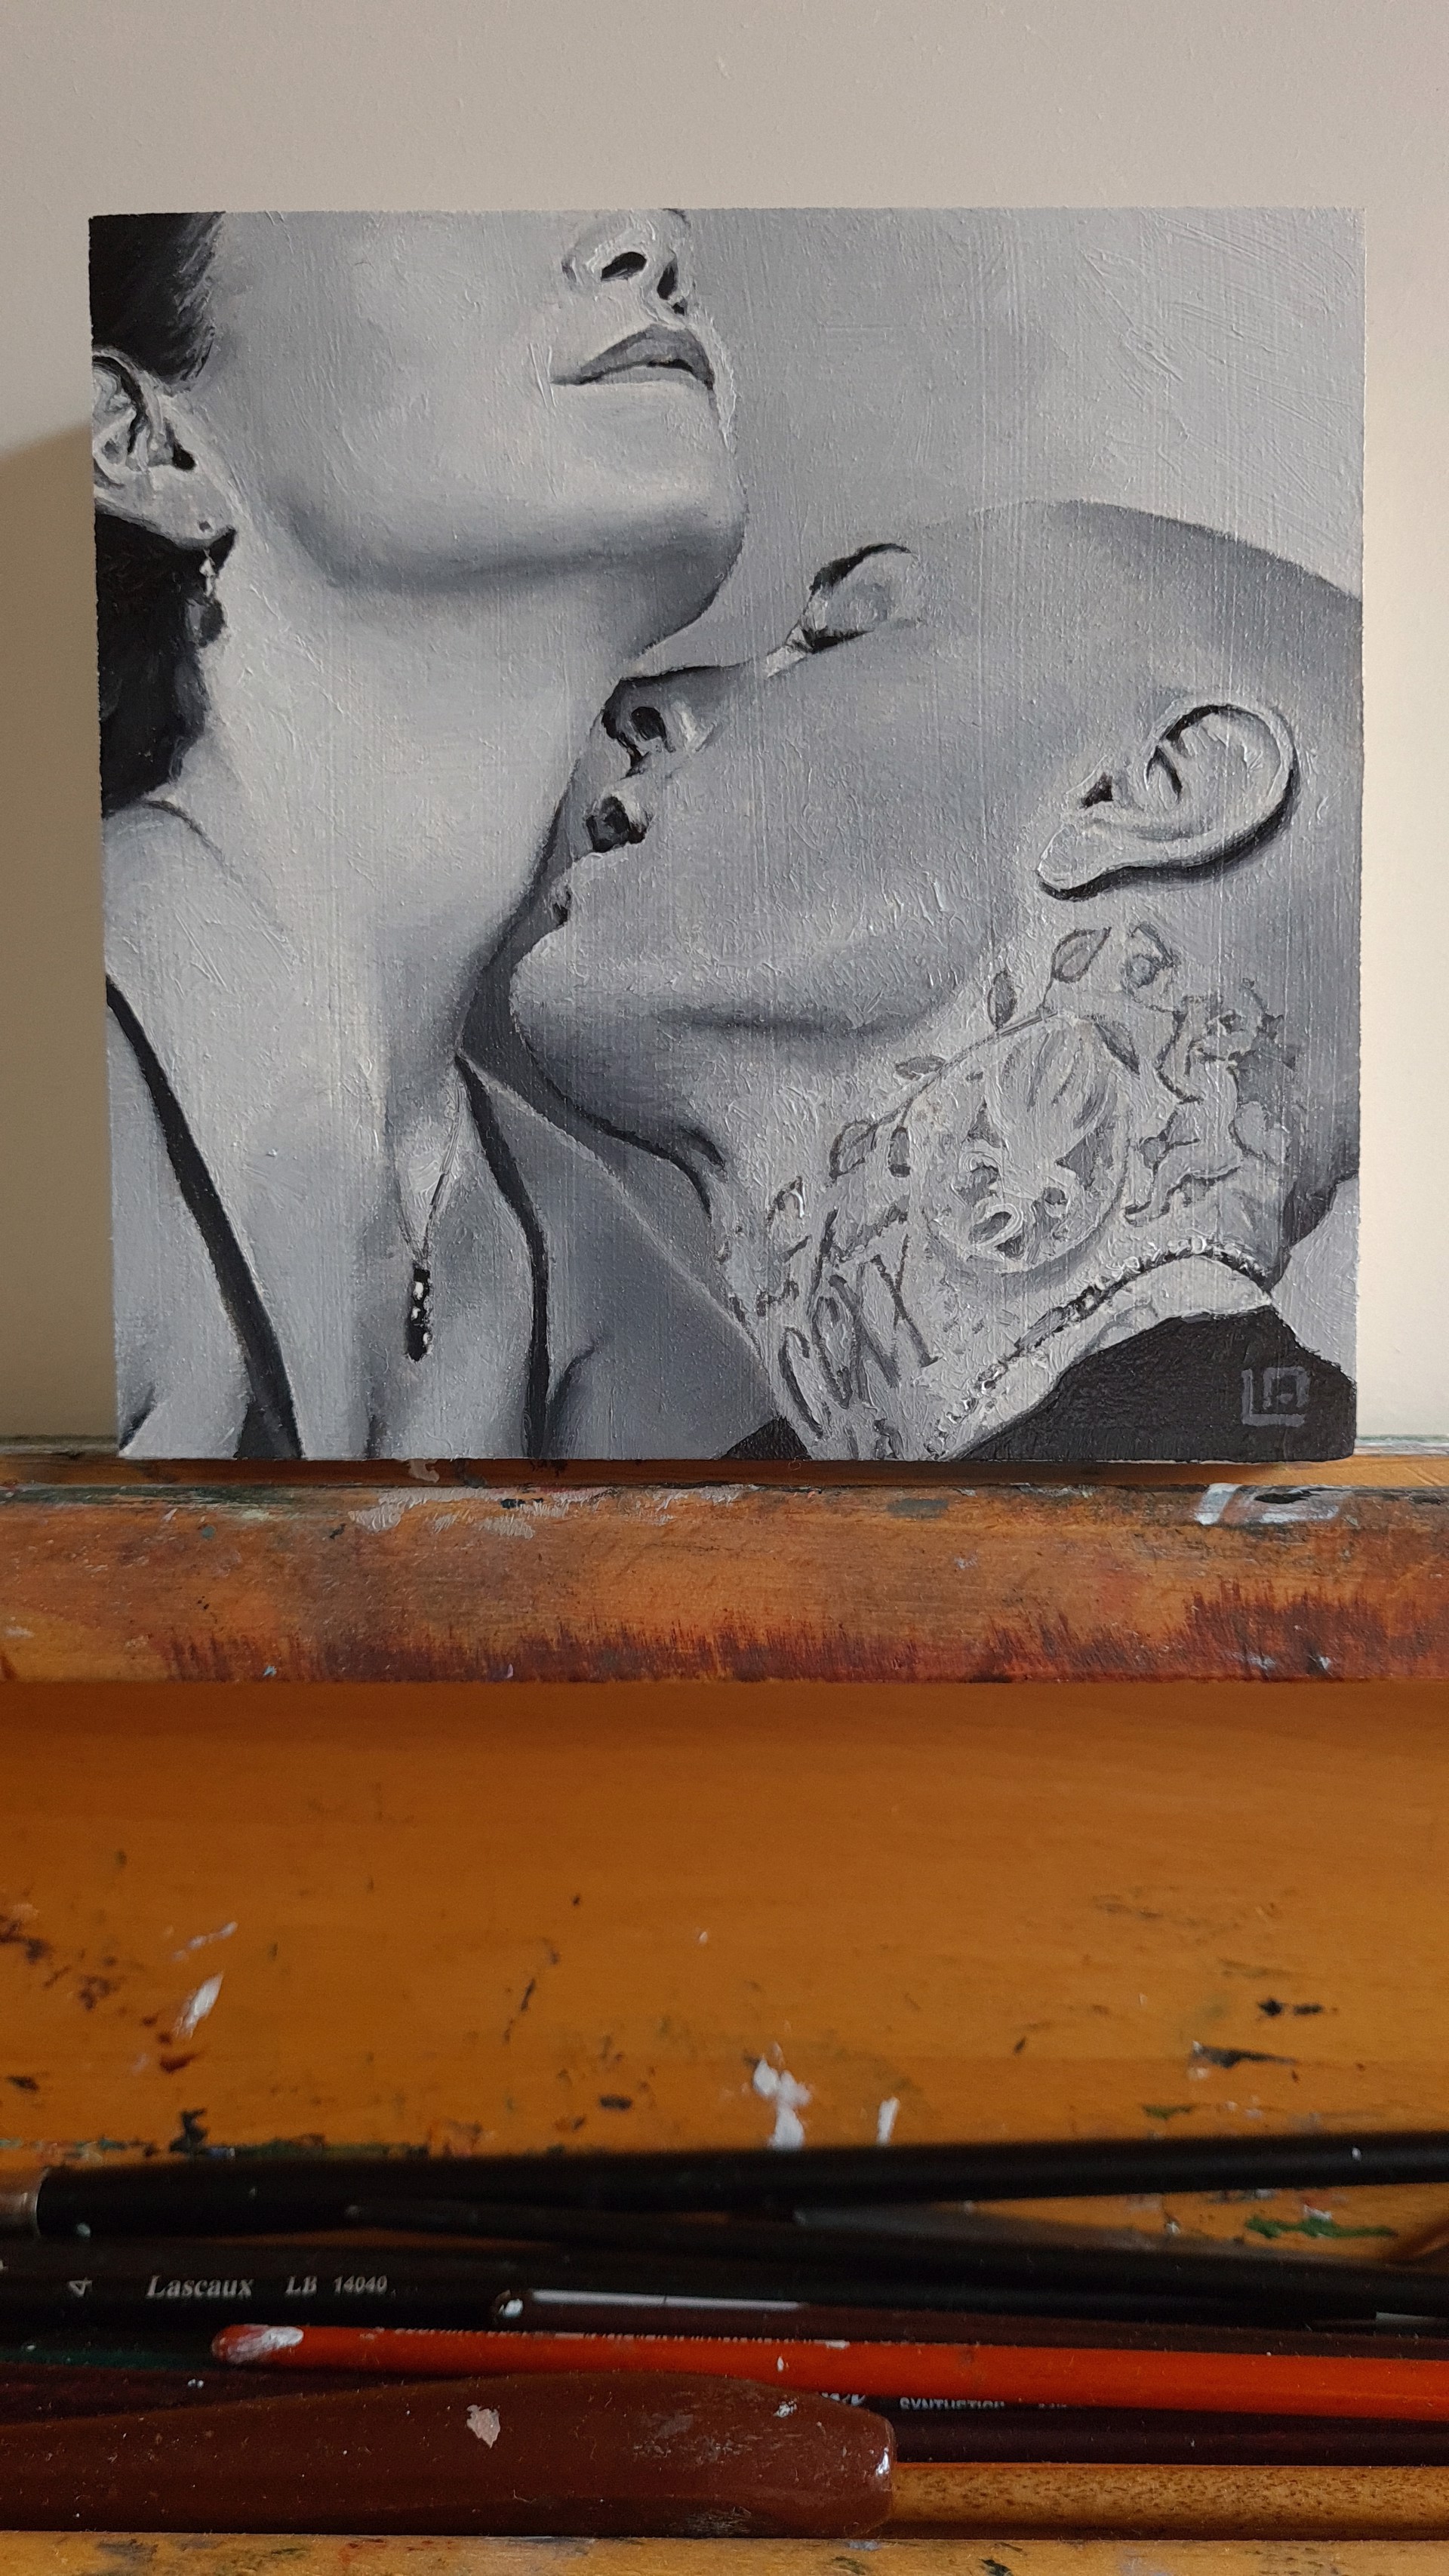 The Kiss #2 by Linda Adair